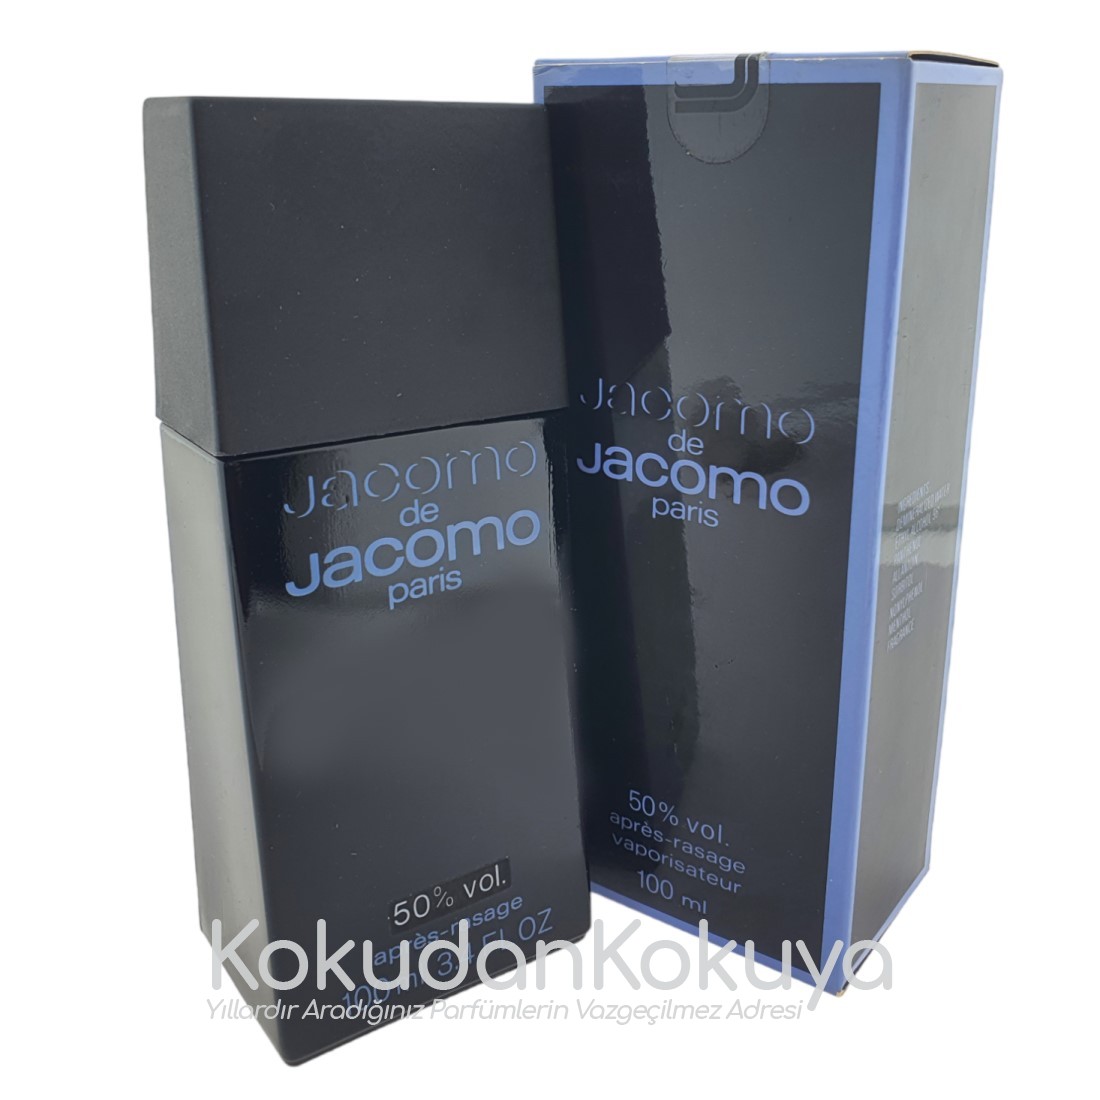 JACOMO Jacomo de Jacomo (Vintage 1) Erkek Cilt Bakım Ürünleri Erkek 50ml Traş Losyonu Sprey 